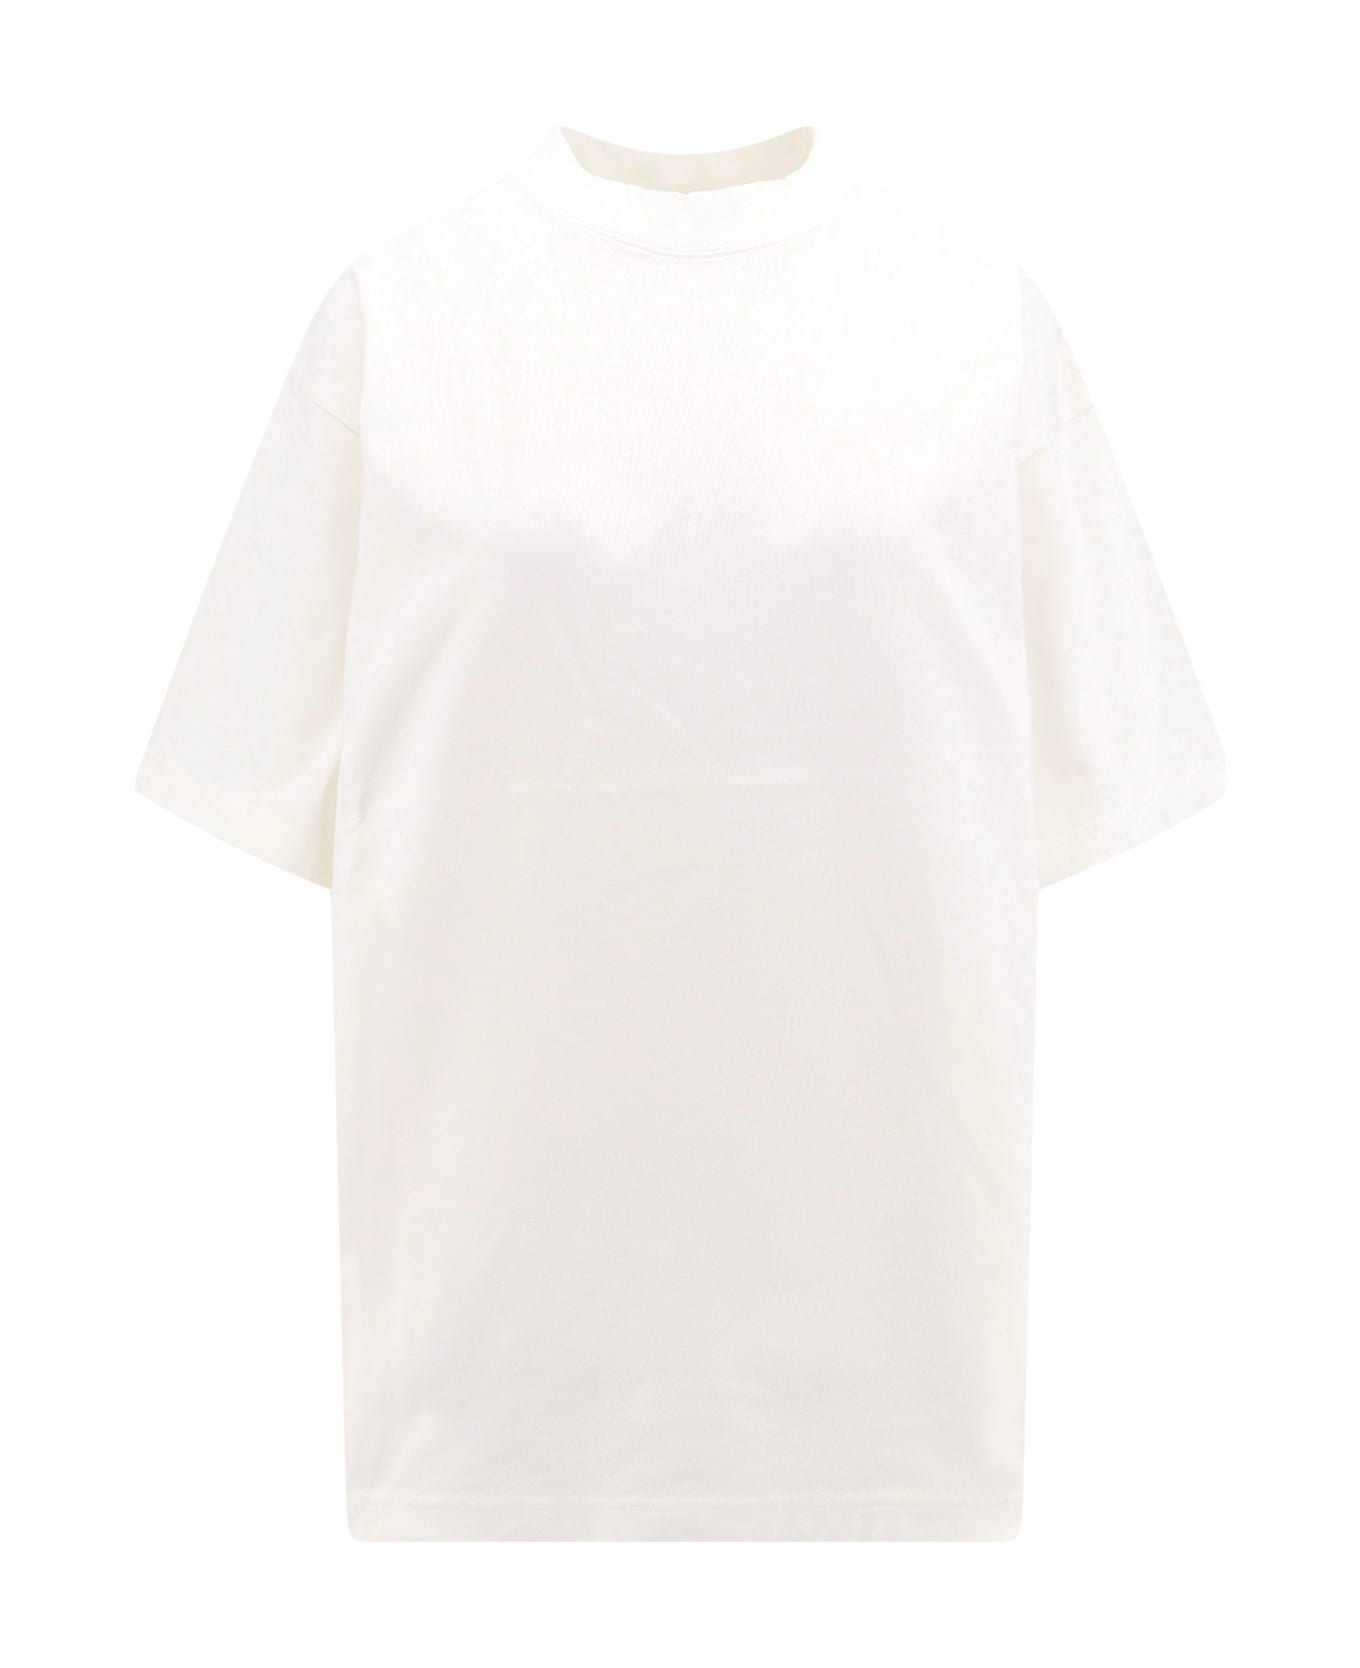 Balenciaga Hand-drawn T-shirt - White シャツ